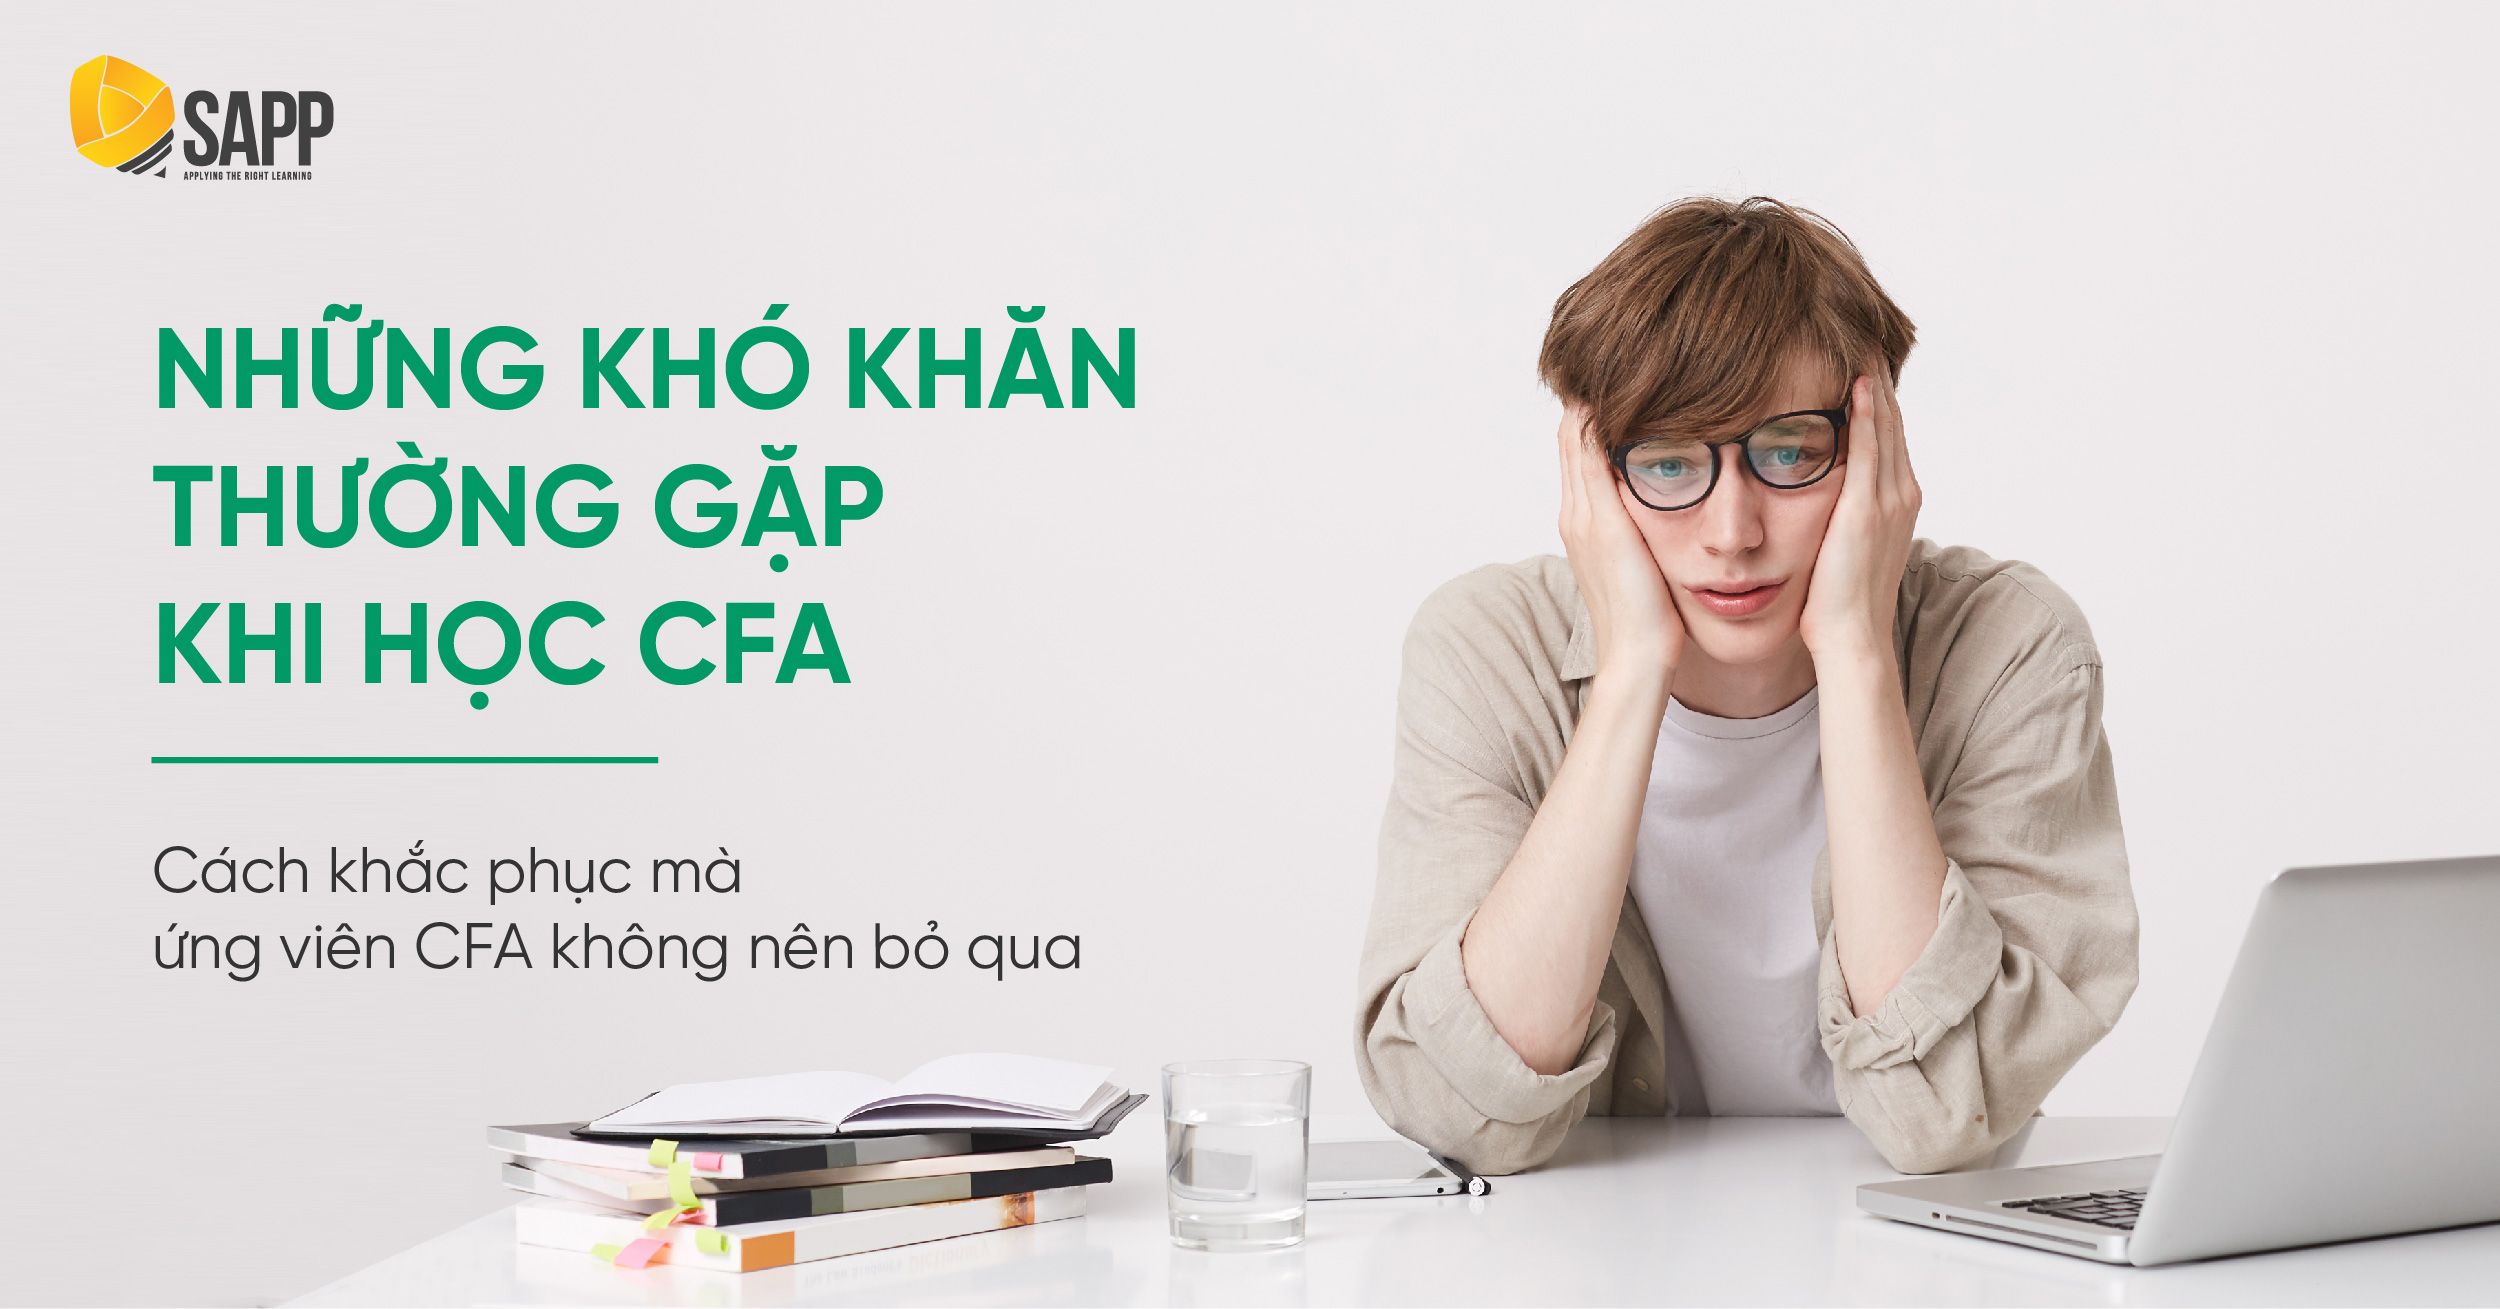 Khó Khăn Khi Học CFA Là Gì? Cách Khắc Phục Mà Ứng Viên CFA Nên Biết